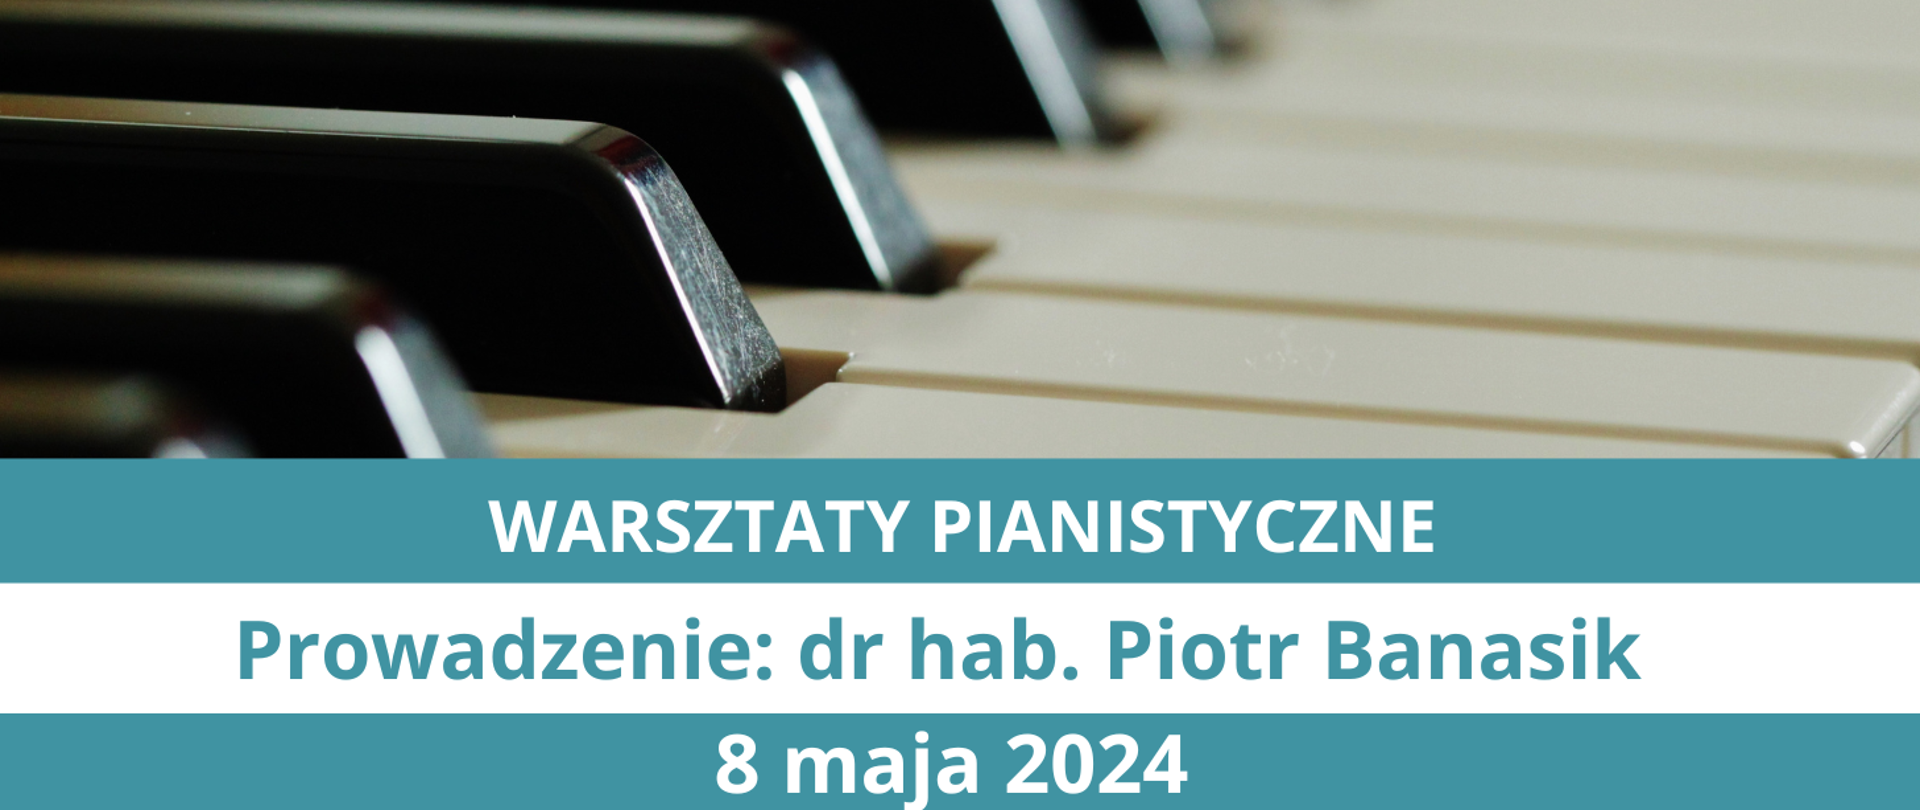 Plakat informujący o warsztaty dla pianistów, zaplanowanych na 8 maja 2024, prowadzonych przez pana dr hab. Piotra Banasika. Na górze zdjęcie klawiatury fortepianu (białe i czarne klawisze), na dole tekst w kolorowych ramkach.